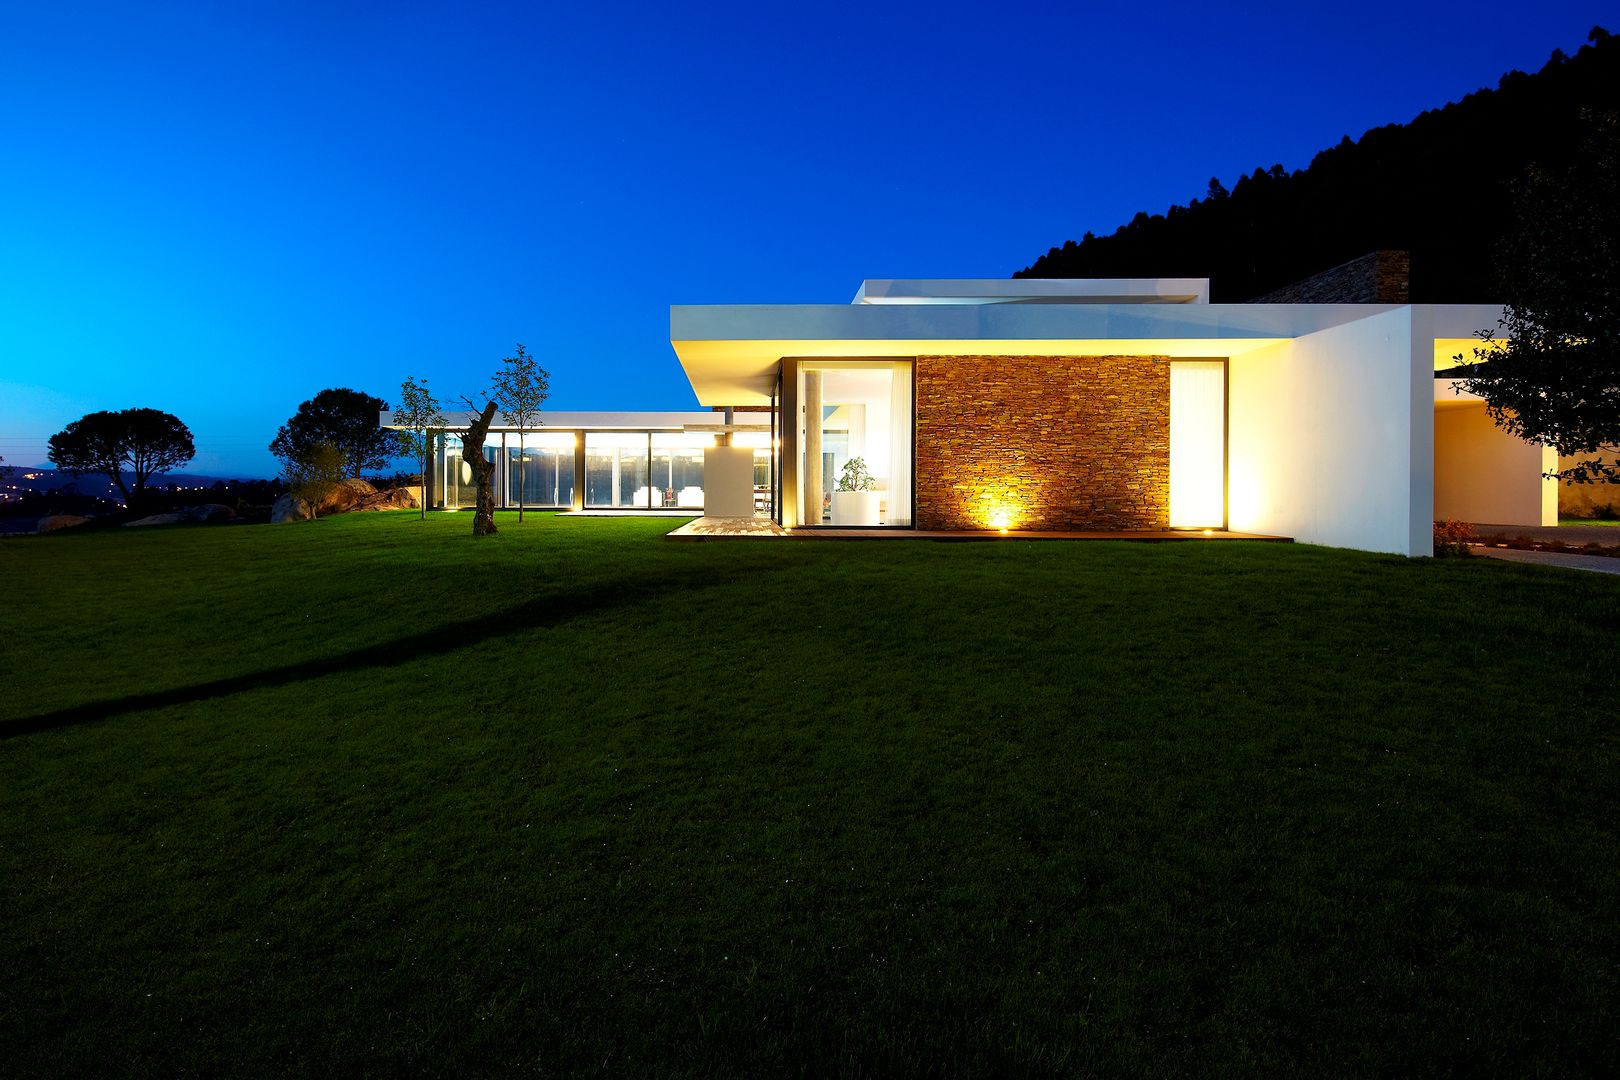 Casa moderna de dimensões generosas e piscina interior, Risco Singular - Arquitectura Lda Risco Singular - Arquitectura Lda Minimalistische huizen